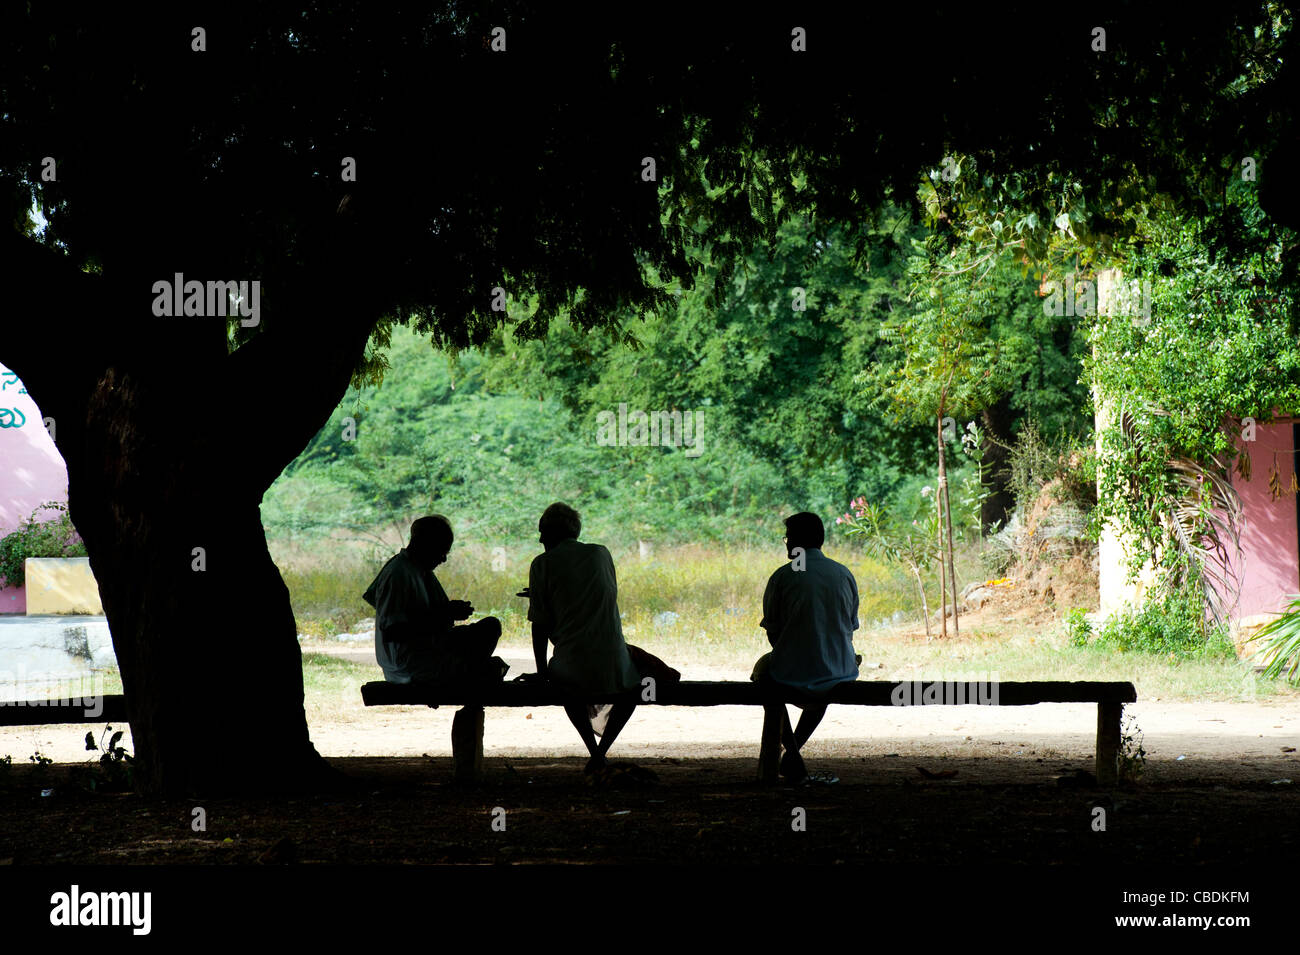 Drei indische Männer sitzen unter einem Baum in der indischen Landschaft sprechen. Silhouette. Andhra Pradesh, Indien Stockfoto